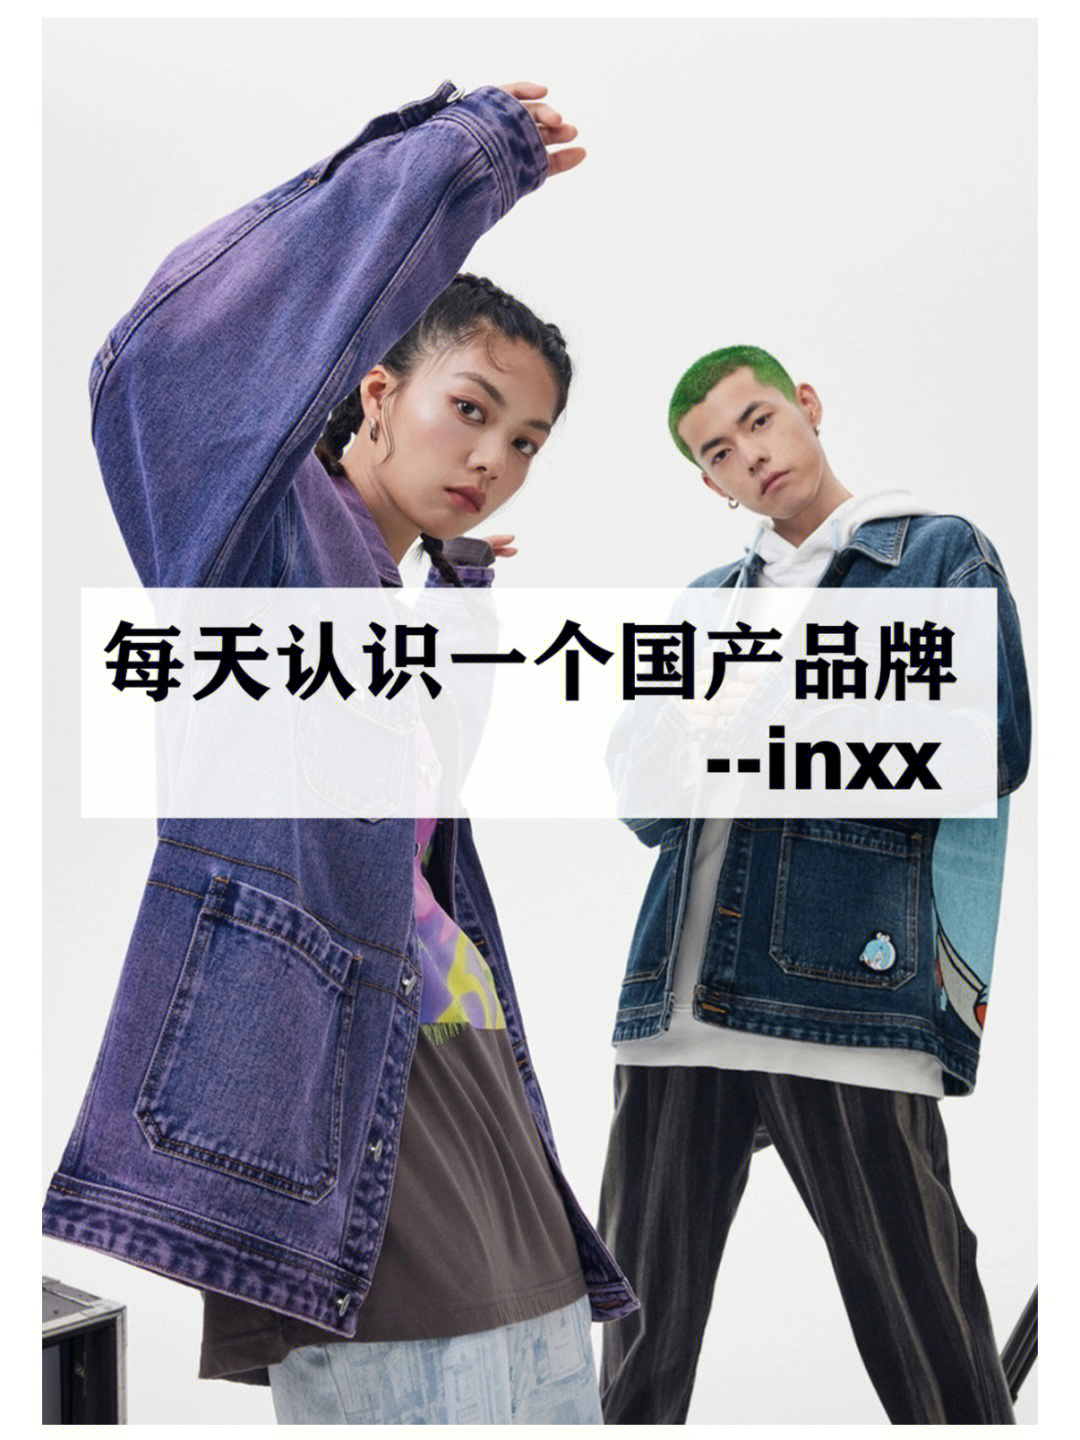 INXX品牌简介图片